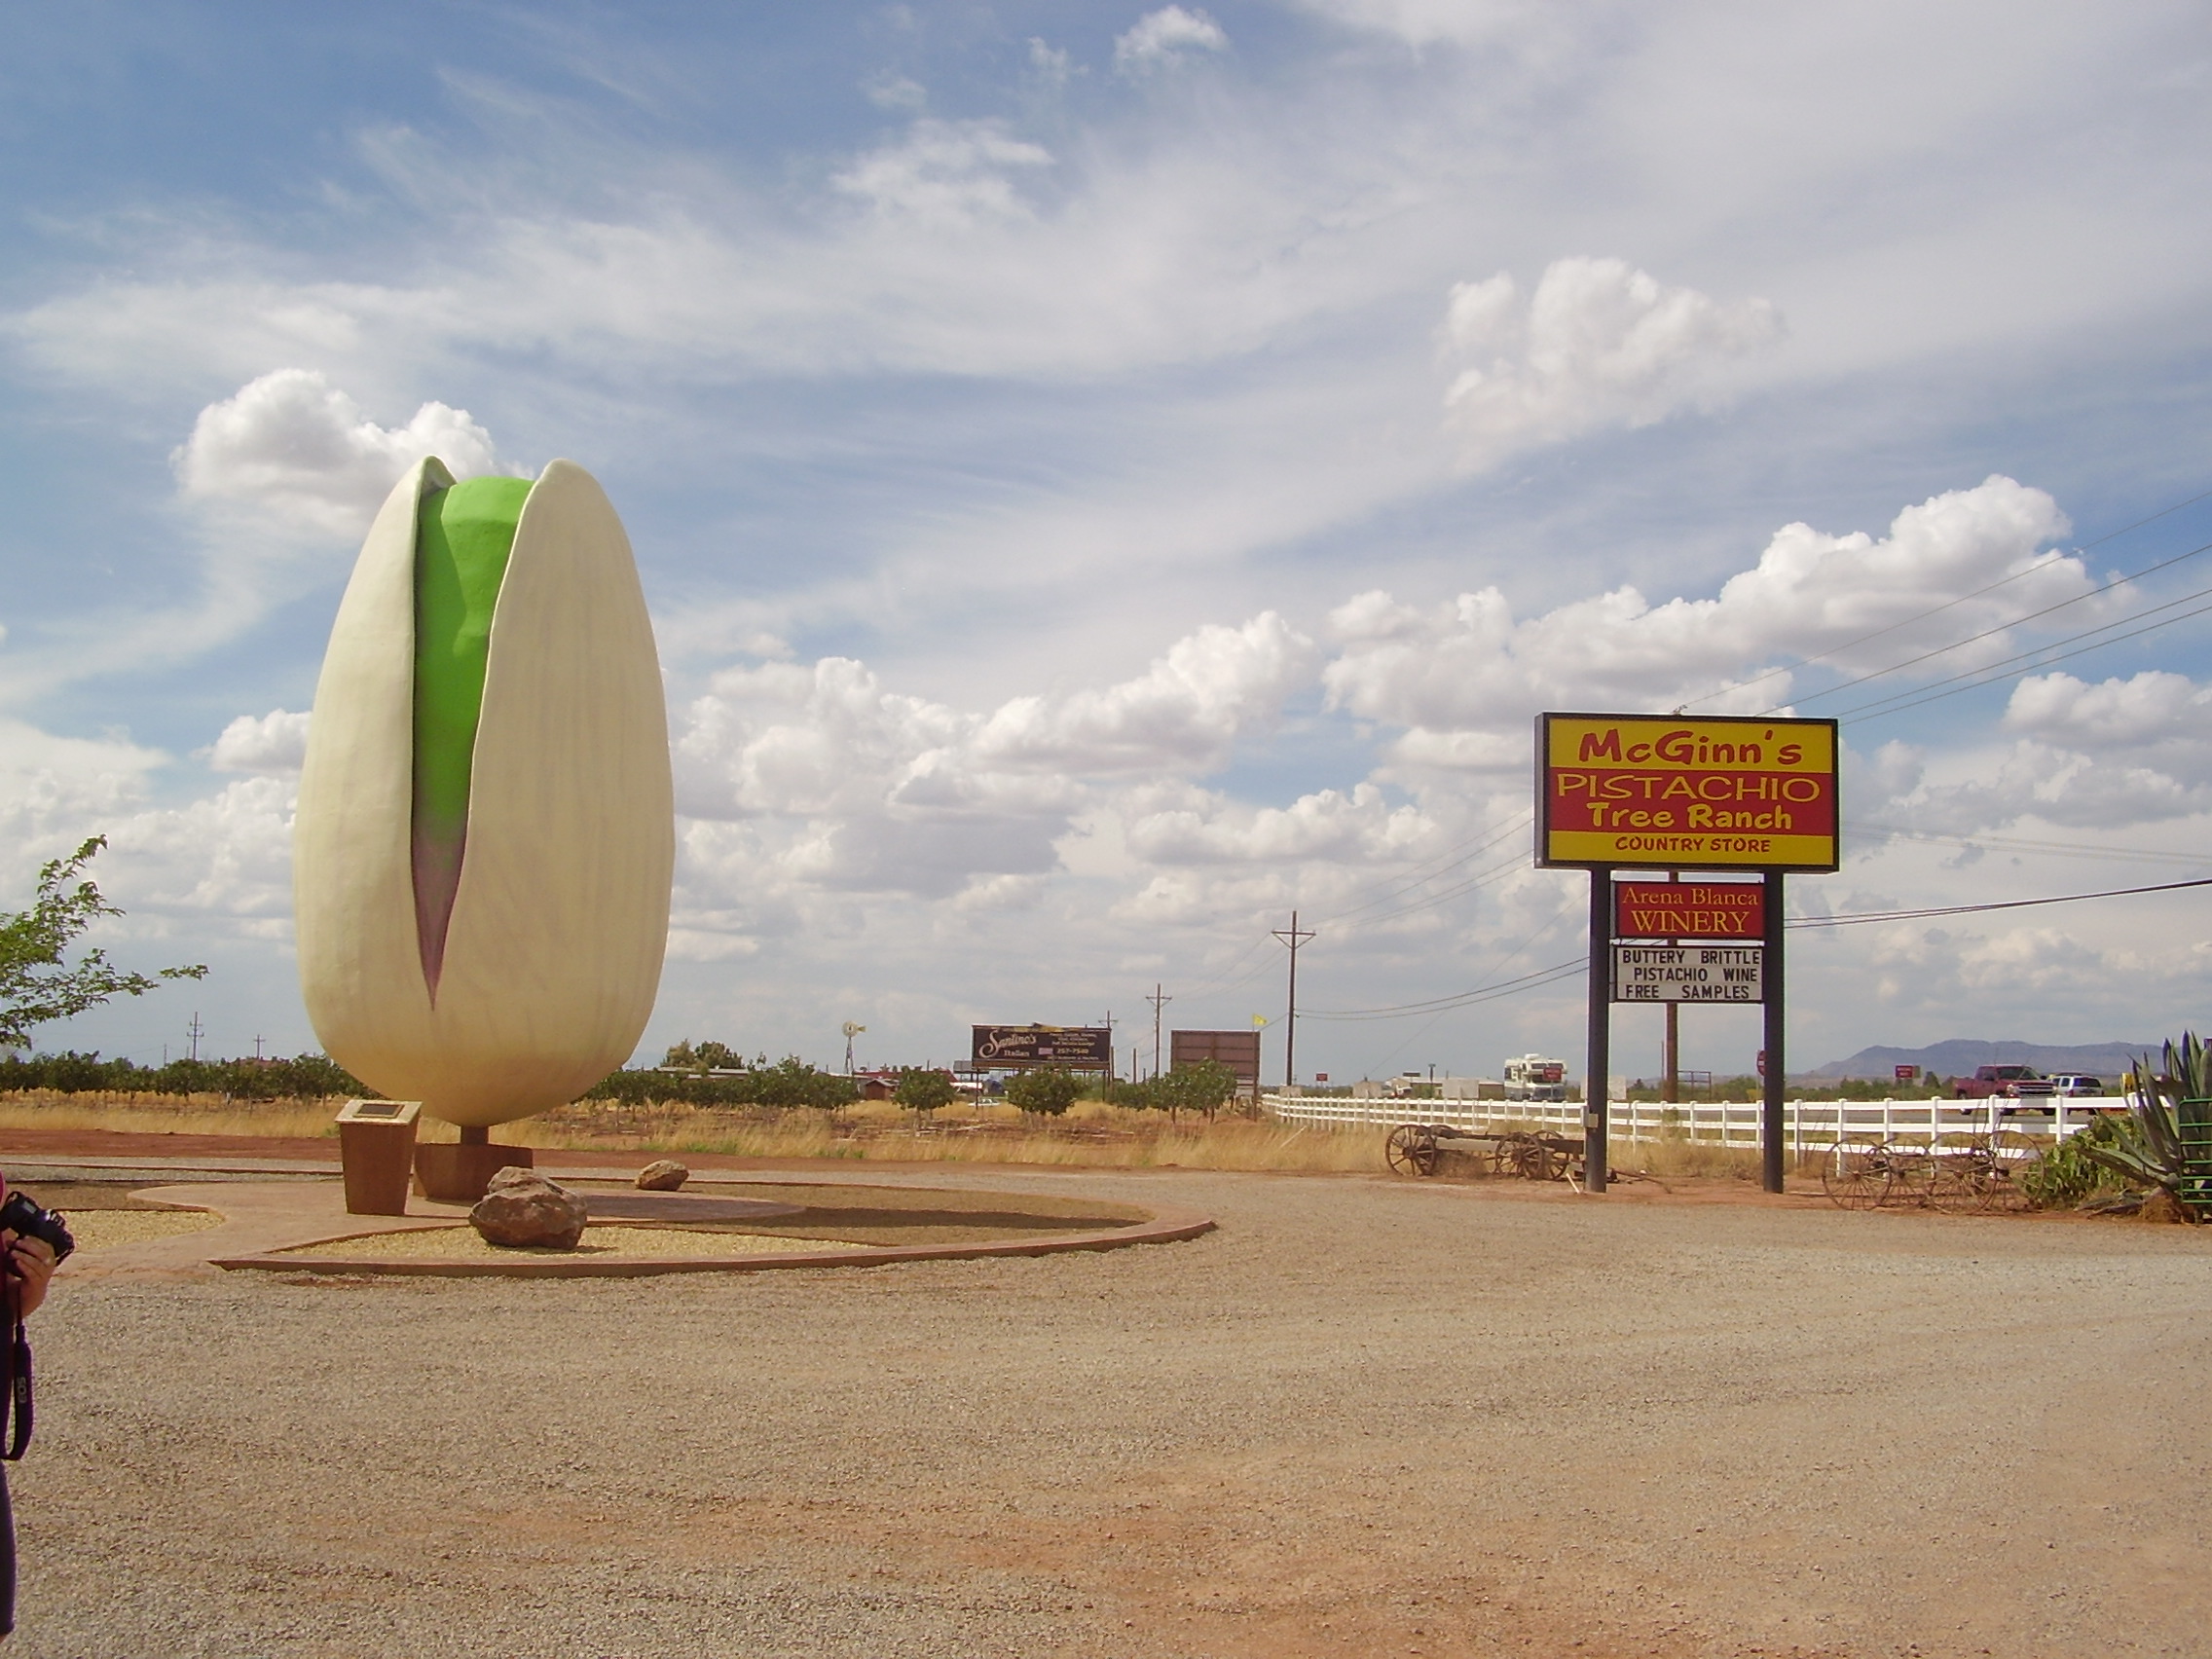 world's largest... "pistachio"